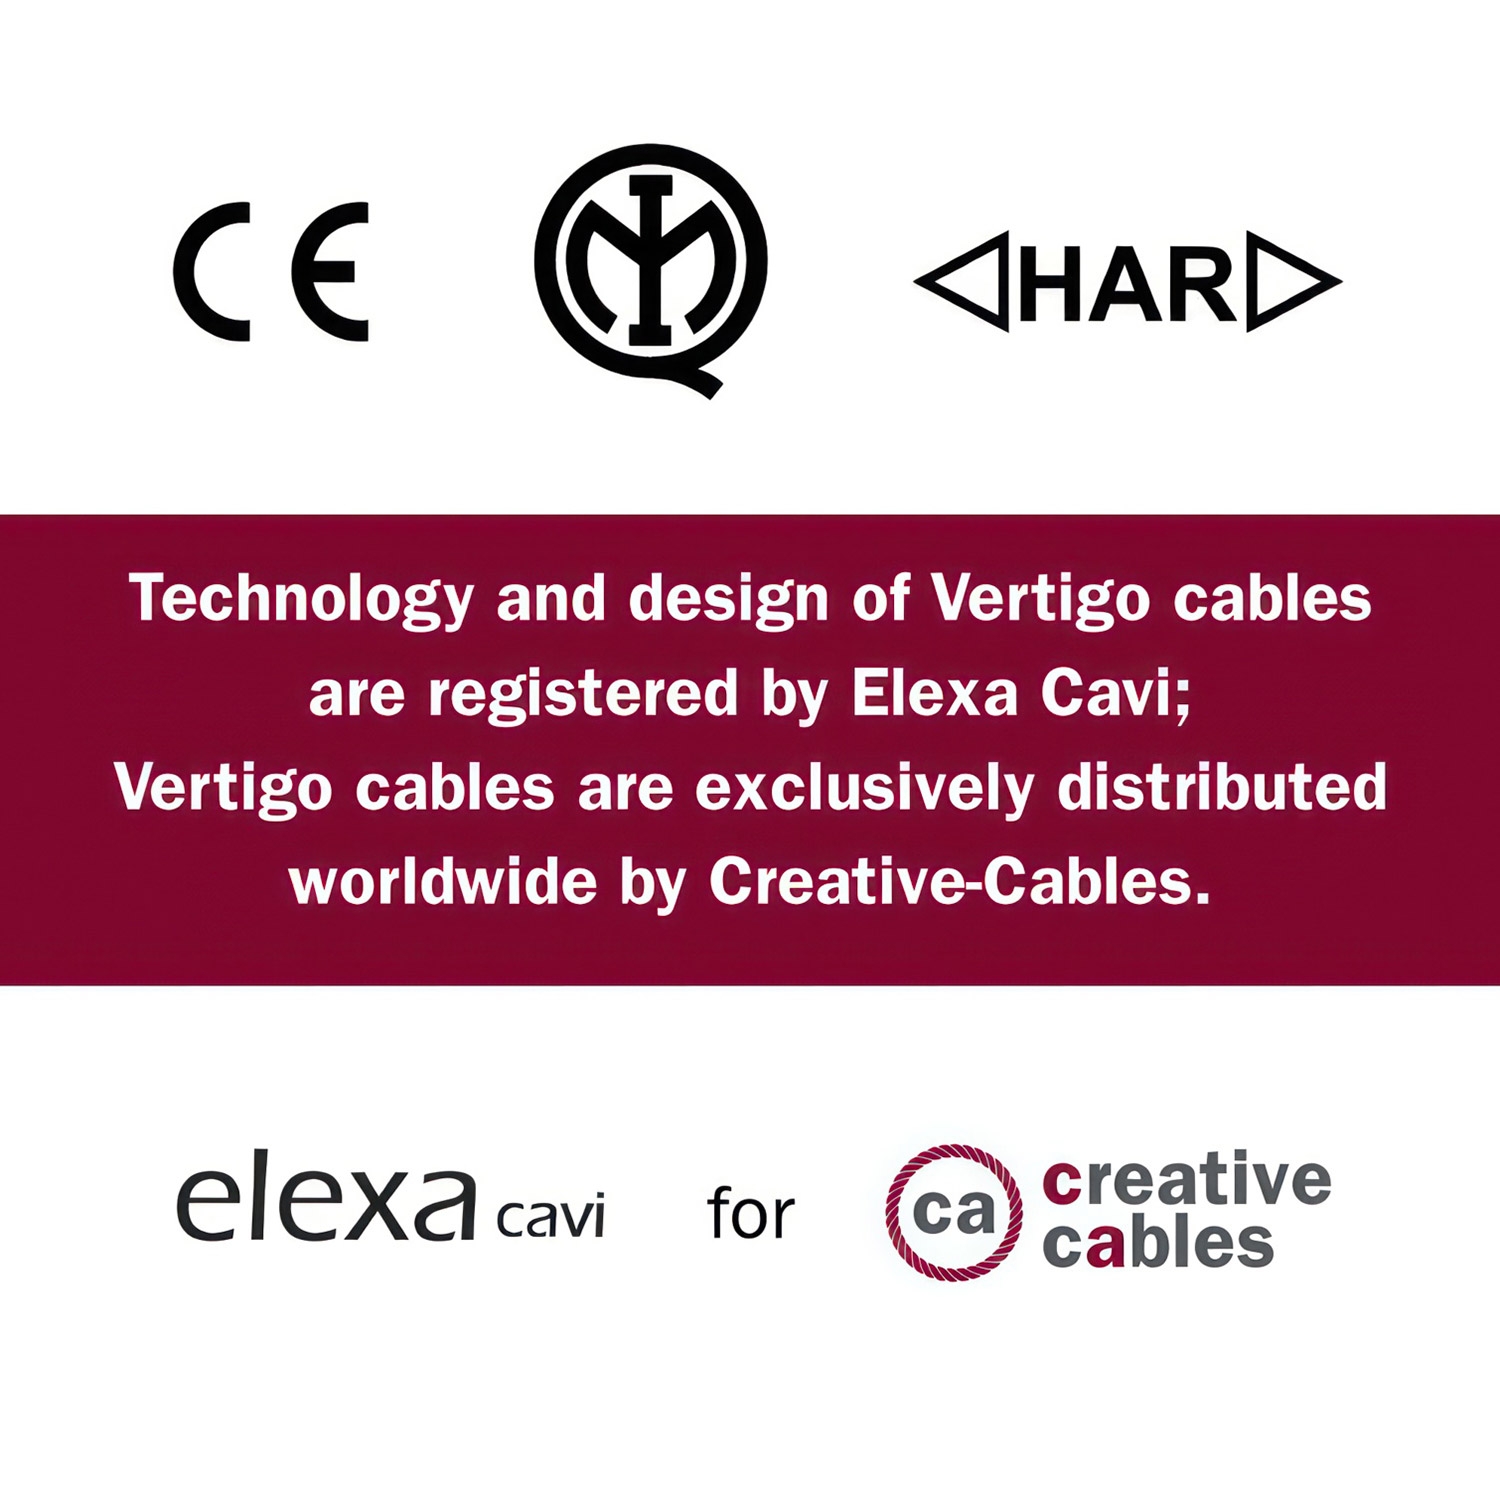 ERM38 Graphite & Black Vertigo HD Thin Stripes Round Electrical Fabric Cloth Cord Cable